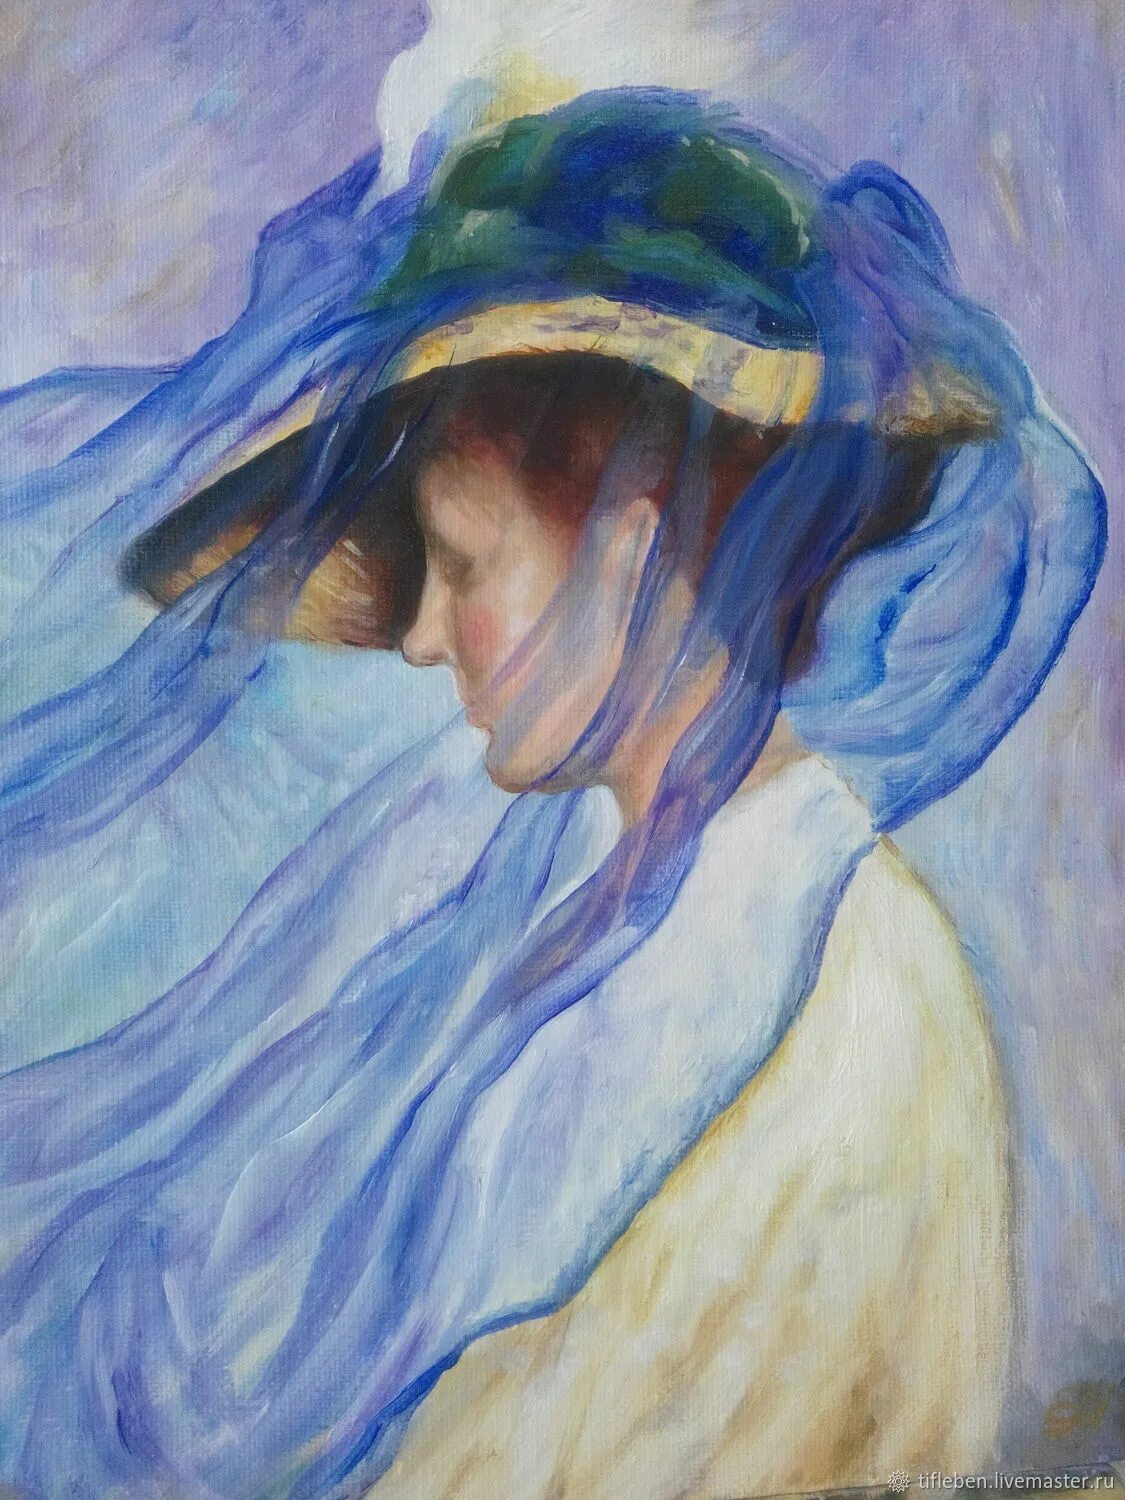 Veil painting. Голубая вуаль Эдмунд Тарбелл. Эдмунд Тарбелл голубая вуаль картина. Вуаль в живописи. Картины с женщинами под вуалью.